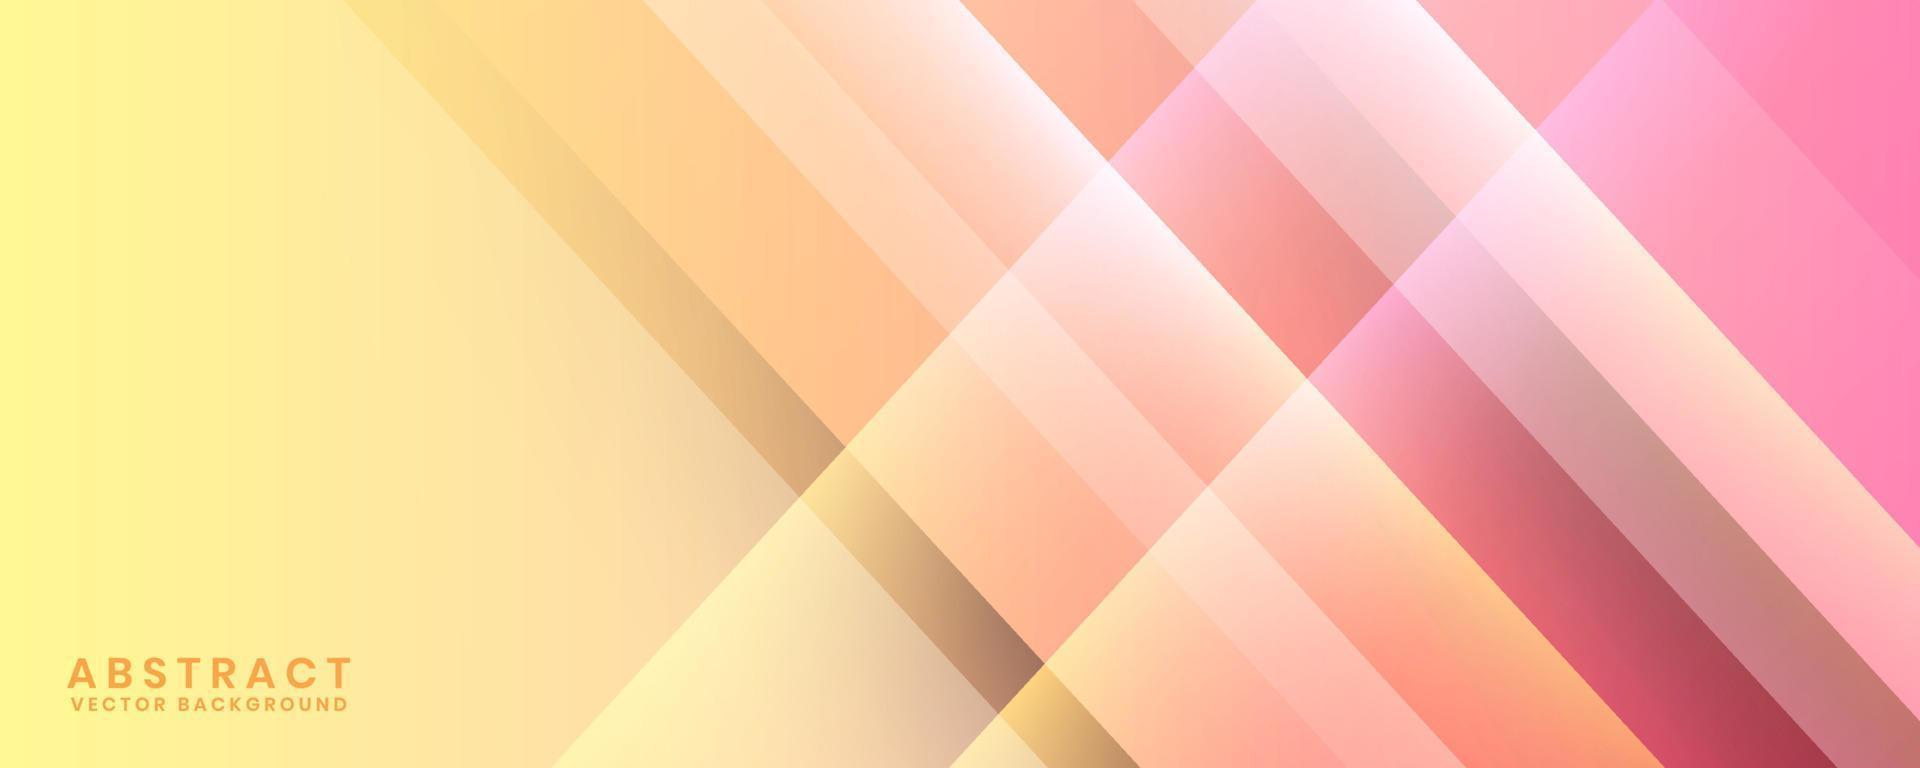 Camada de sobreposição de fundo abstrato geométrico rosa 3d no espaço brilhante com decoração de efeito de recorte. elemento de design gráfico minimalista conceito de estilo colorido para banner, flyer, cartão, capa ou brochura vetor